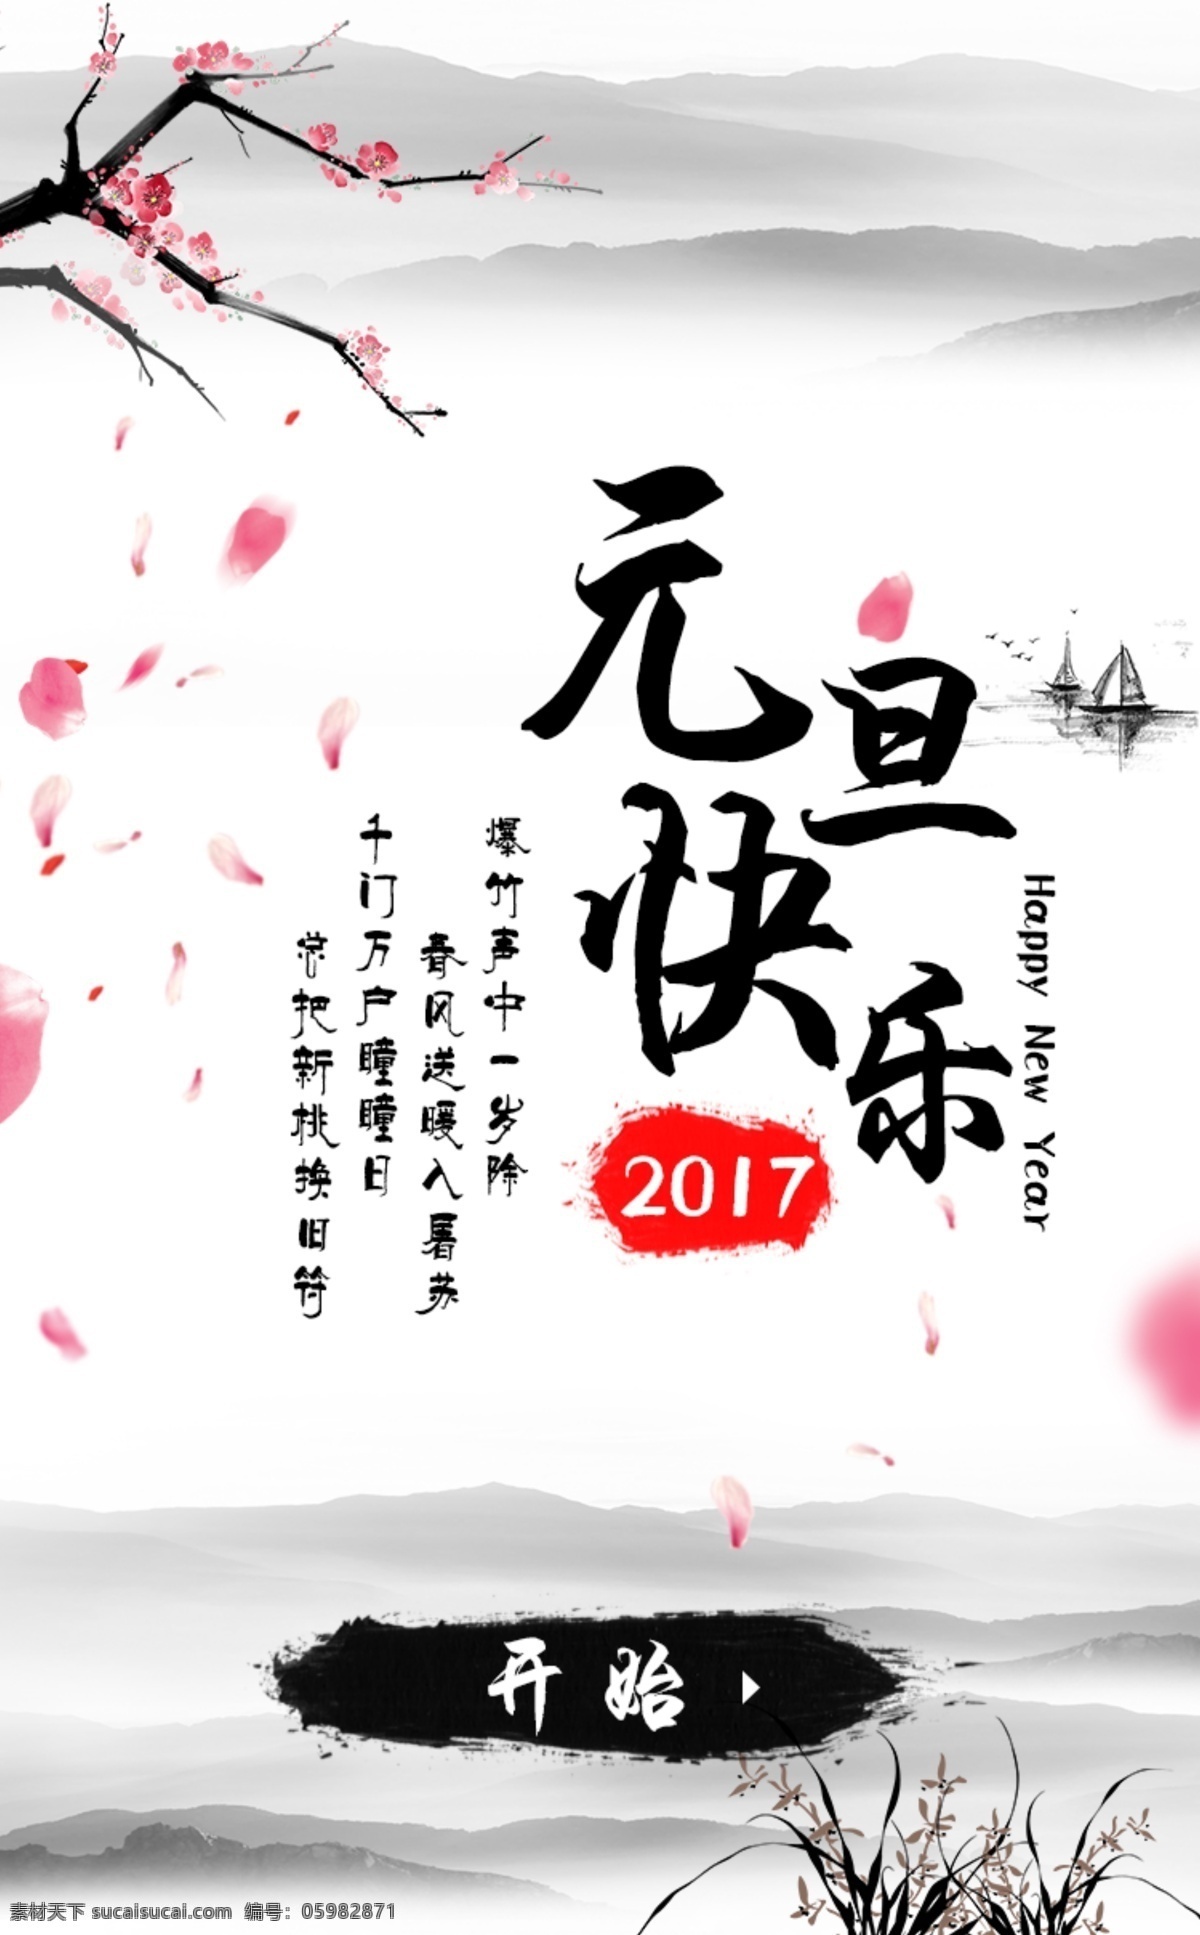 元旦 快乐 水墨 h5 界面设计 模板 微信 中国风 桃花 节日